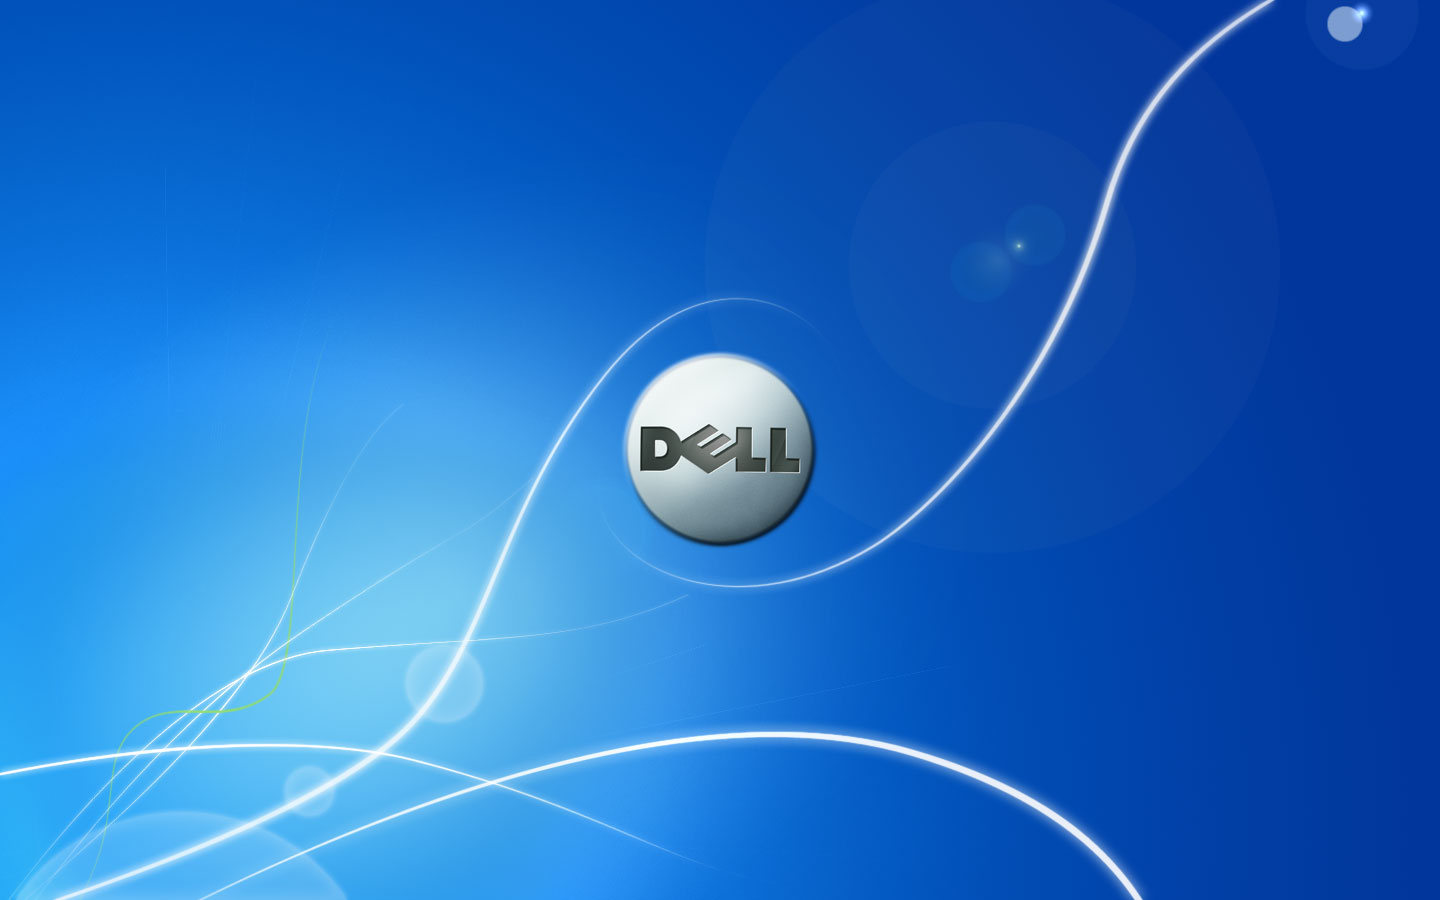 Bạn muốn tìm hình nền miễn phí cho laptop Dell của mình? Hãy ghé thăm trang web của chúng tôi để tải về những hình nền đẹp và phù hợp nhất cho máy tính của bạn. Chúng tôi cam kết cung cấp những hình ảnh chất lượng và đa dạng nhất để bạn được lựa chọn.